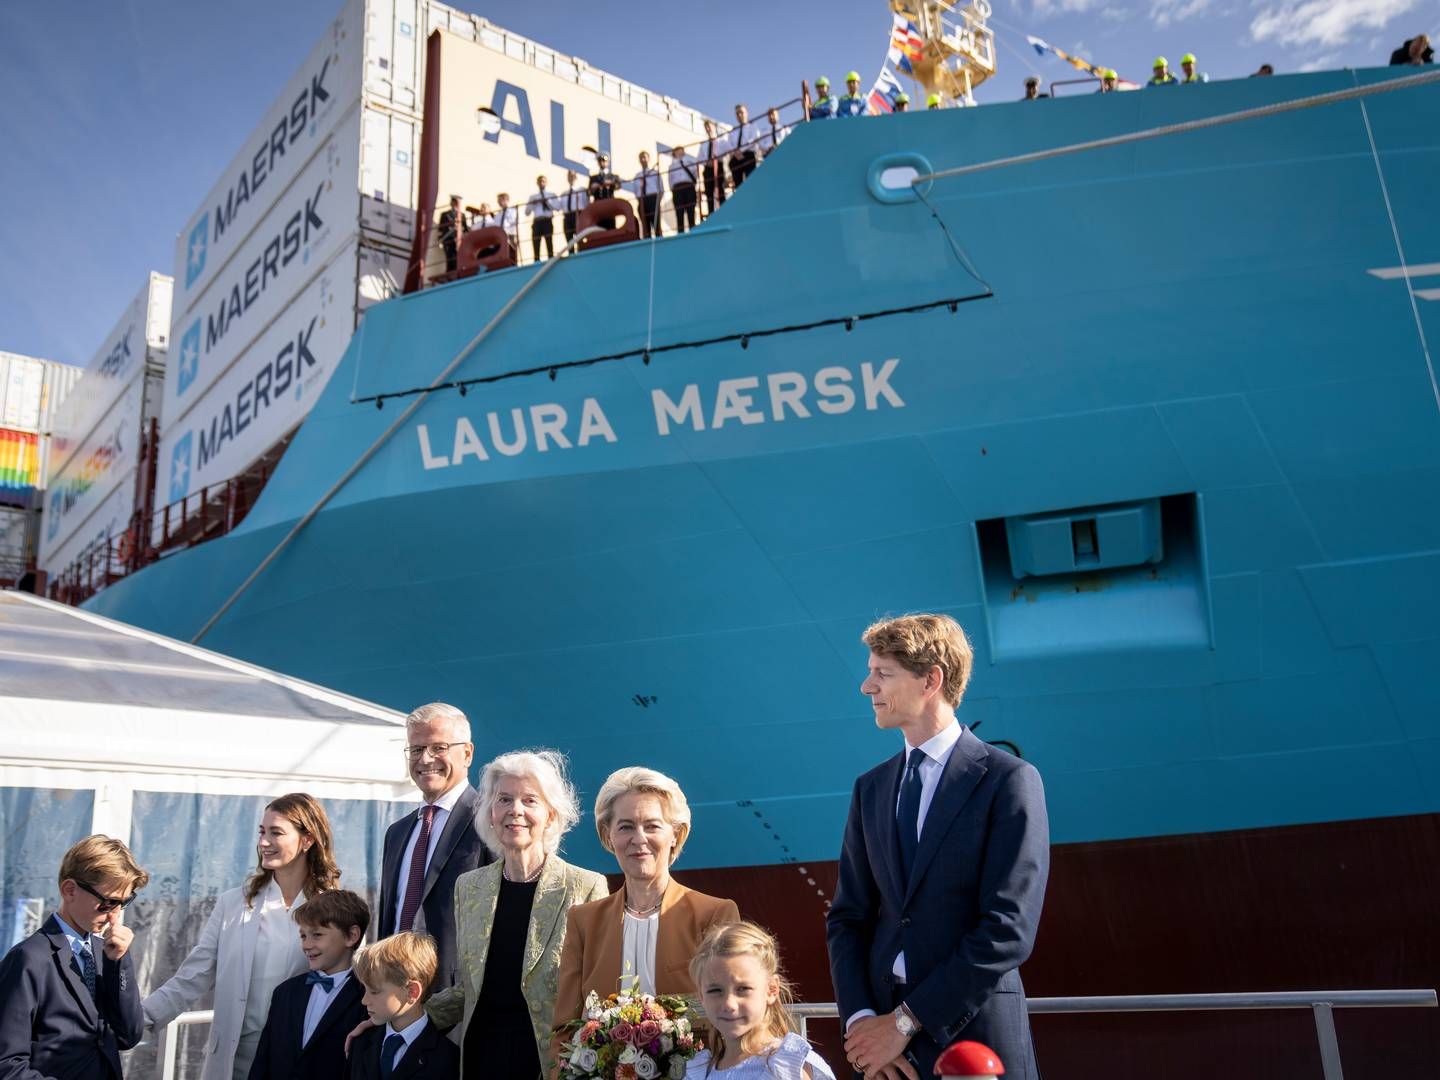 Forrige tirsdag blev Mærsks første containerskib, der sejler på metanol, navngivet. Det kræver dog, at den biogene CO2 bliver anvendt og ikke kun lagret, hvis mange flere skal følge trop, pointerer Dansk Erhverv. | Foto: Mads Claus Rasmussen